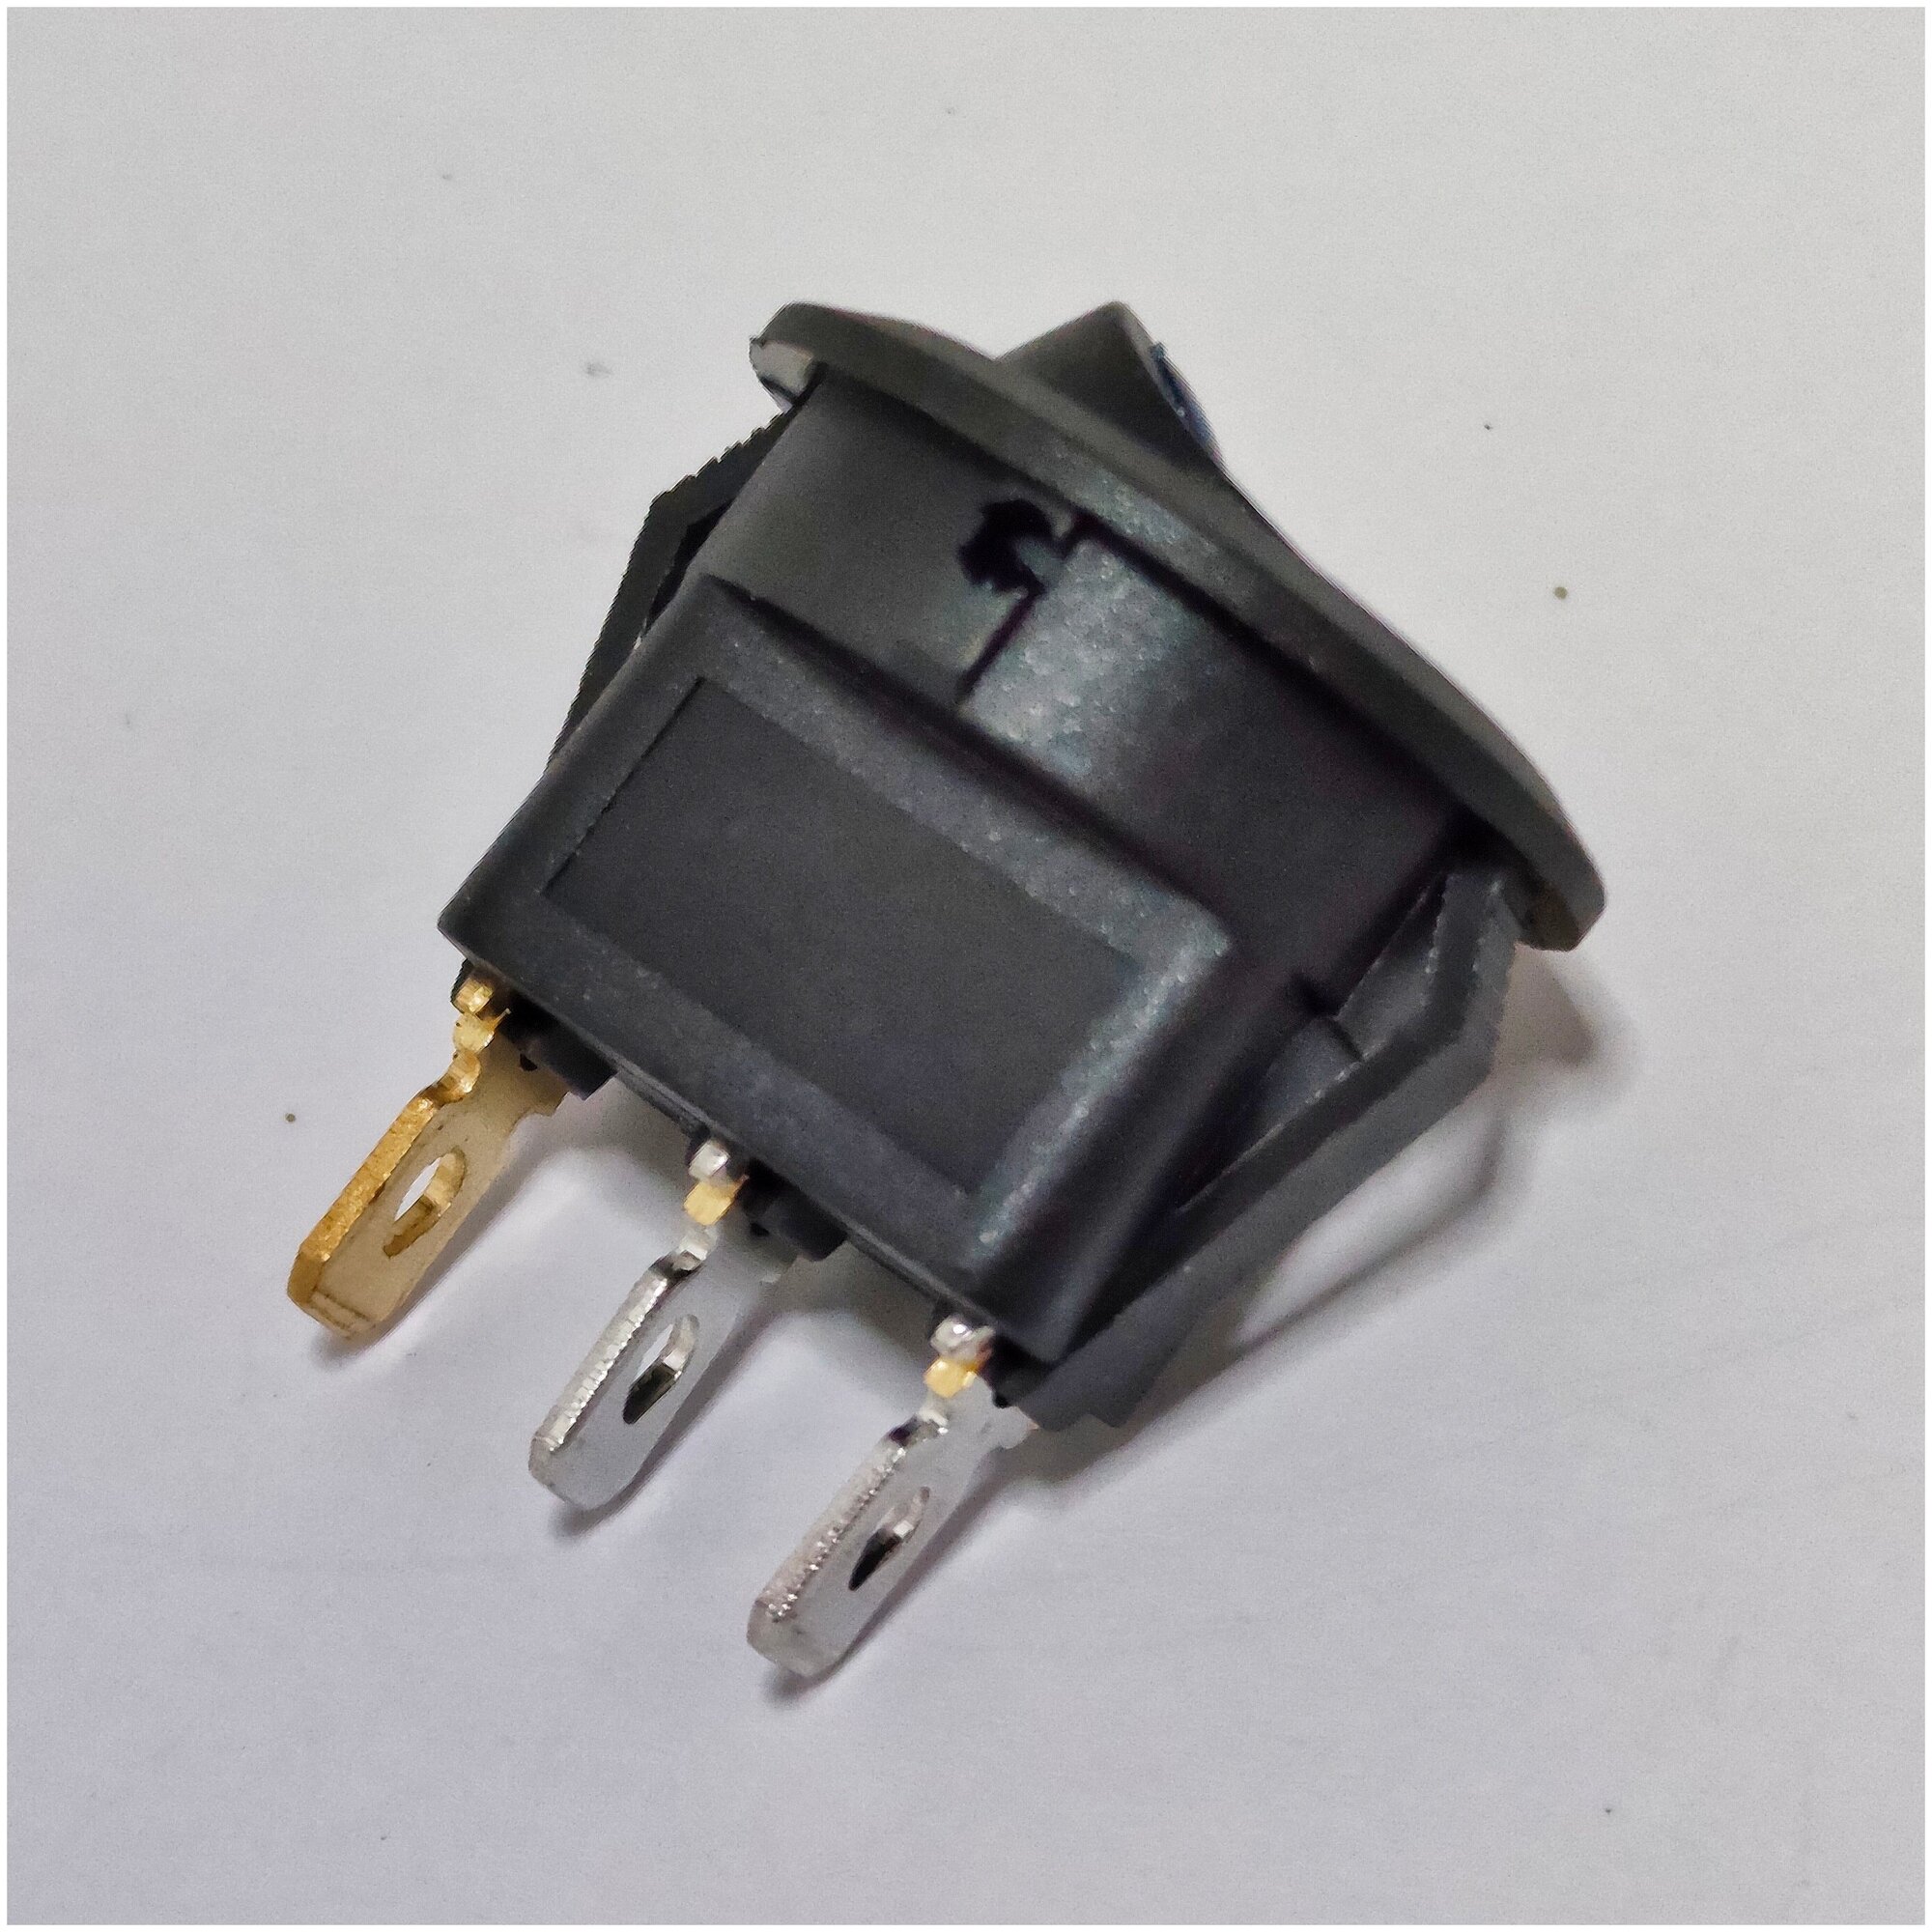 Выключатель клавишный круглый 12V 20А (3с) ON-OFF черный с красной подсветкой (комплект с клеммами и термоусадкой)